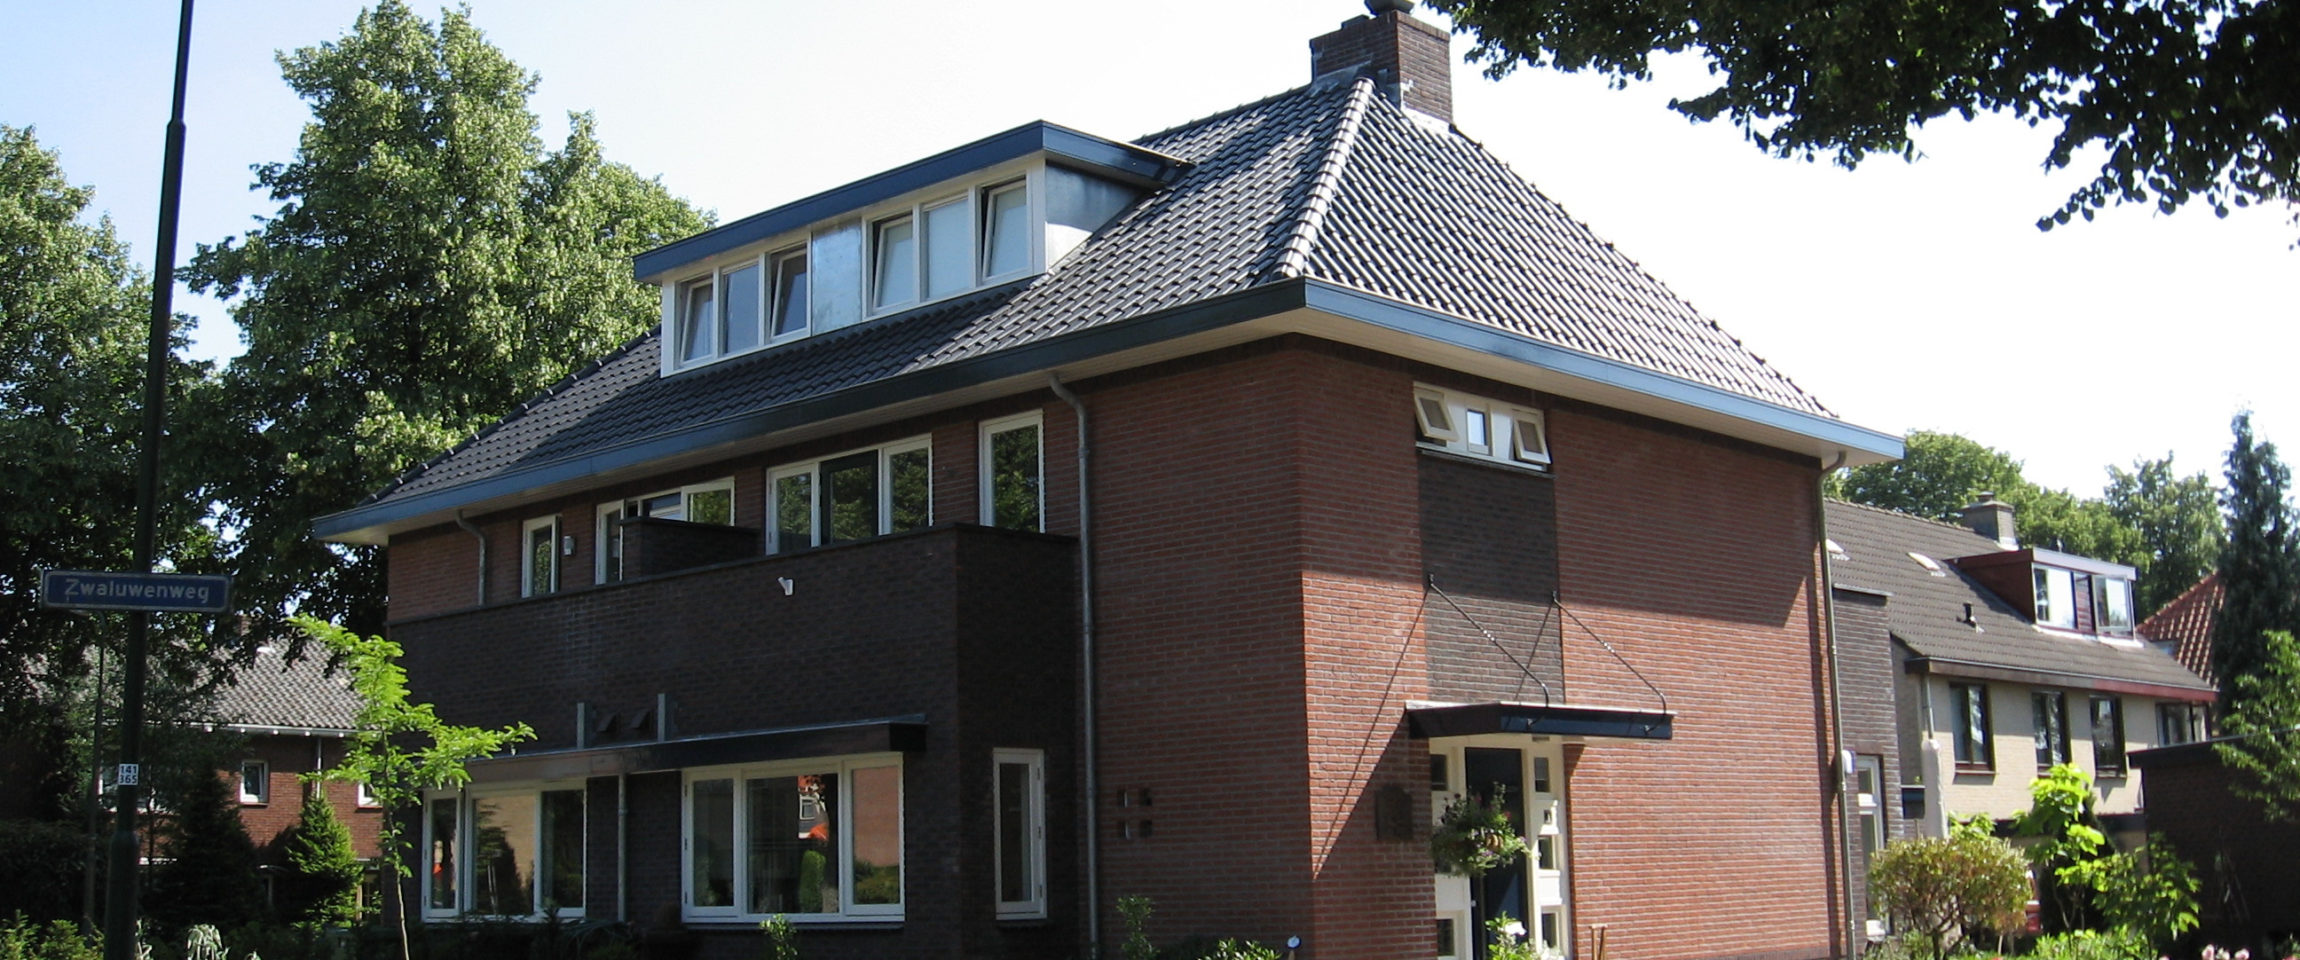 BC Soest - Woningbouw - Albert Hahnweg-Zwaluwenweg - 8